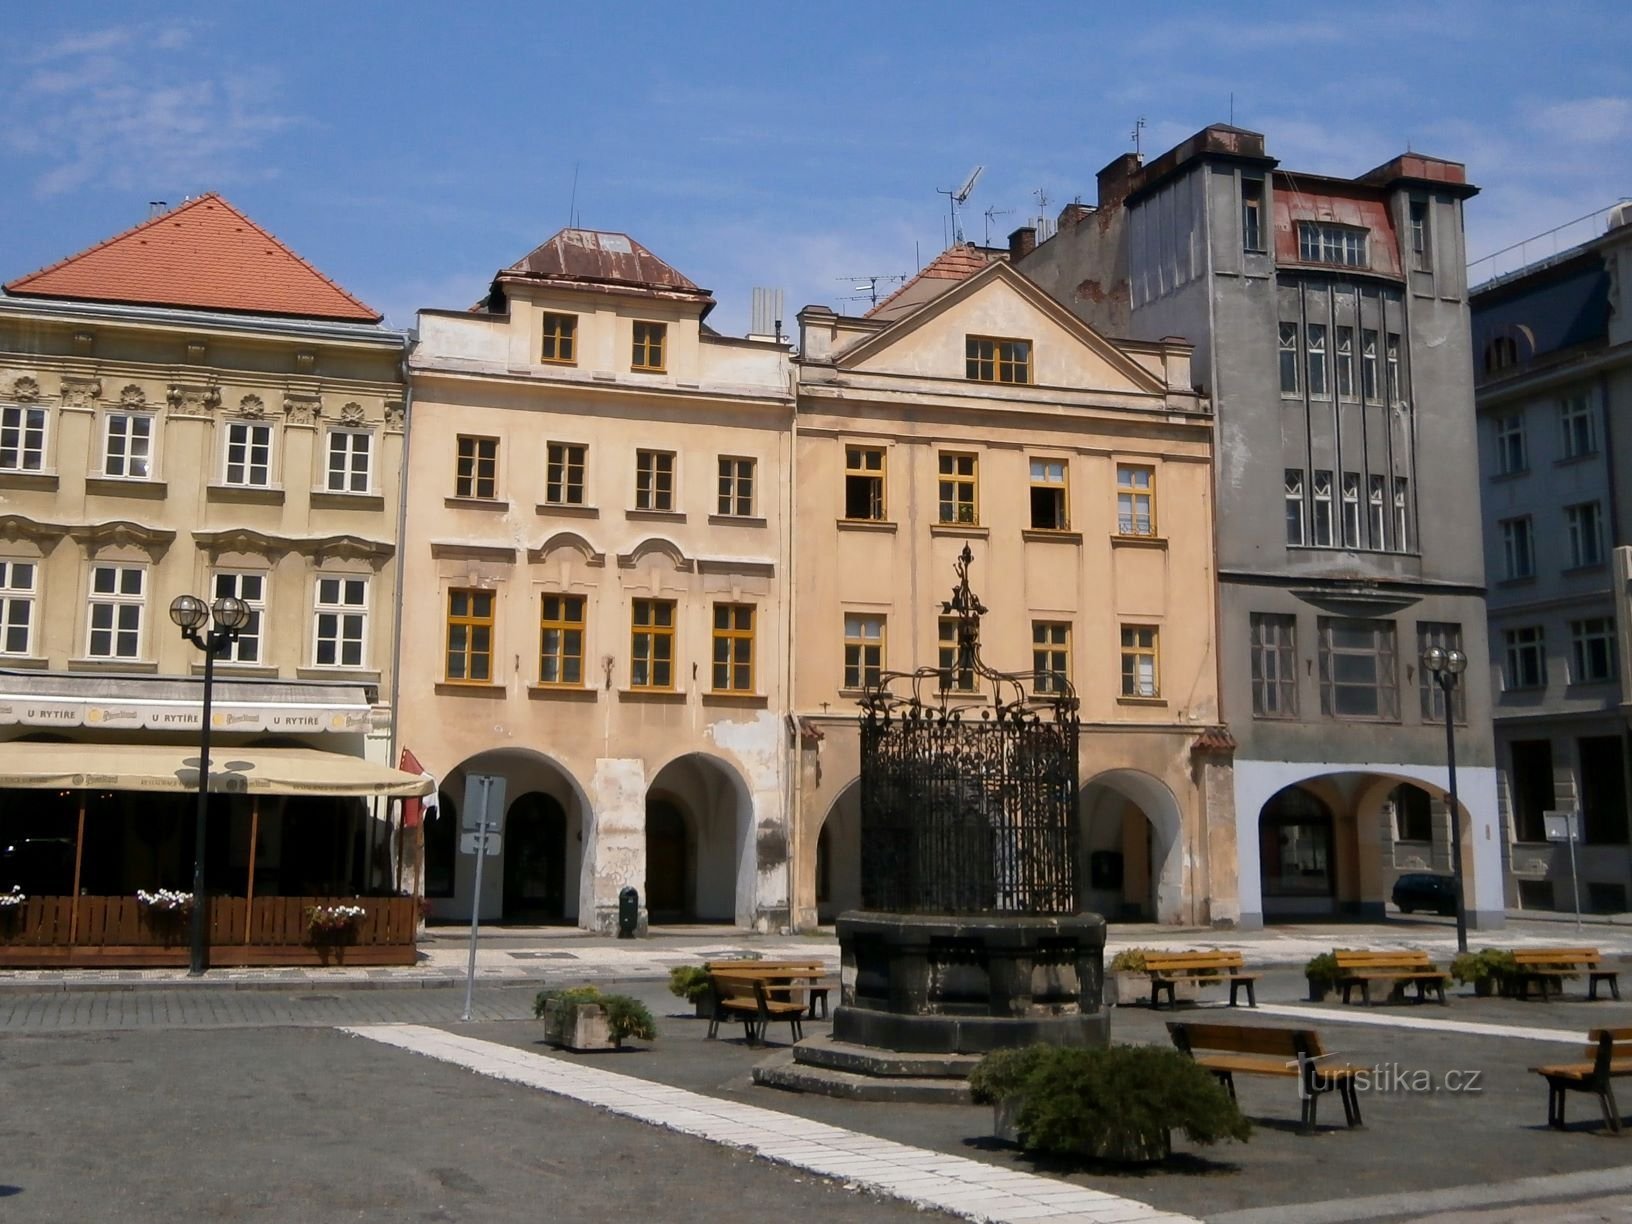 Velké náměstí br. 143-142 (Hradec Králové, 23.7.2016/XNUMX/XNUMX)